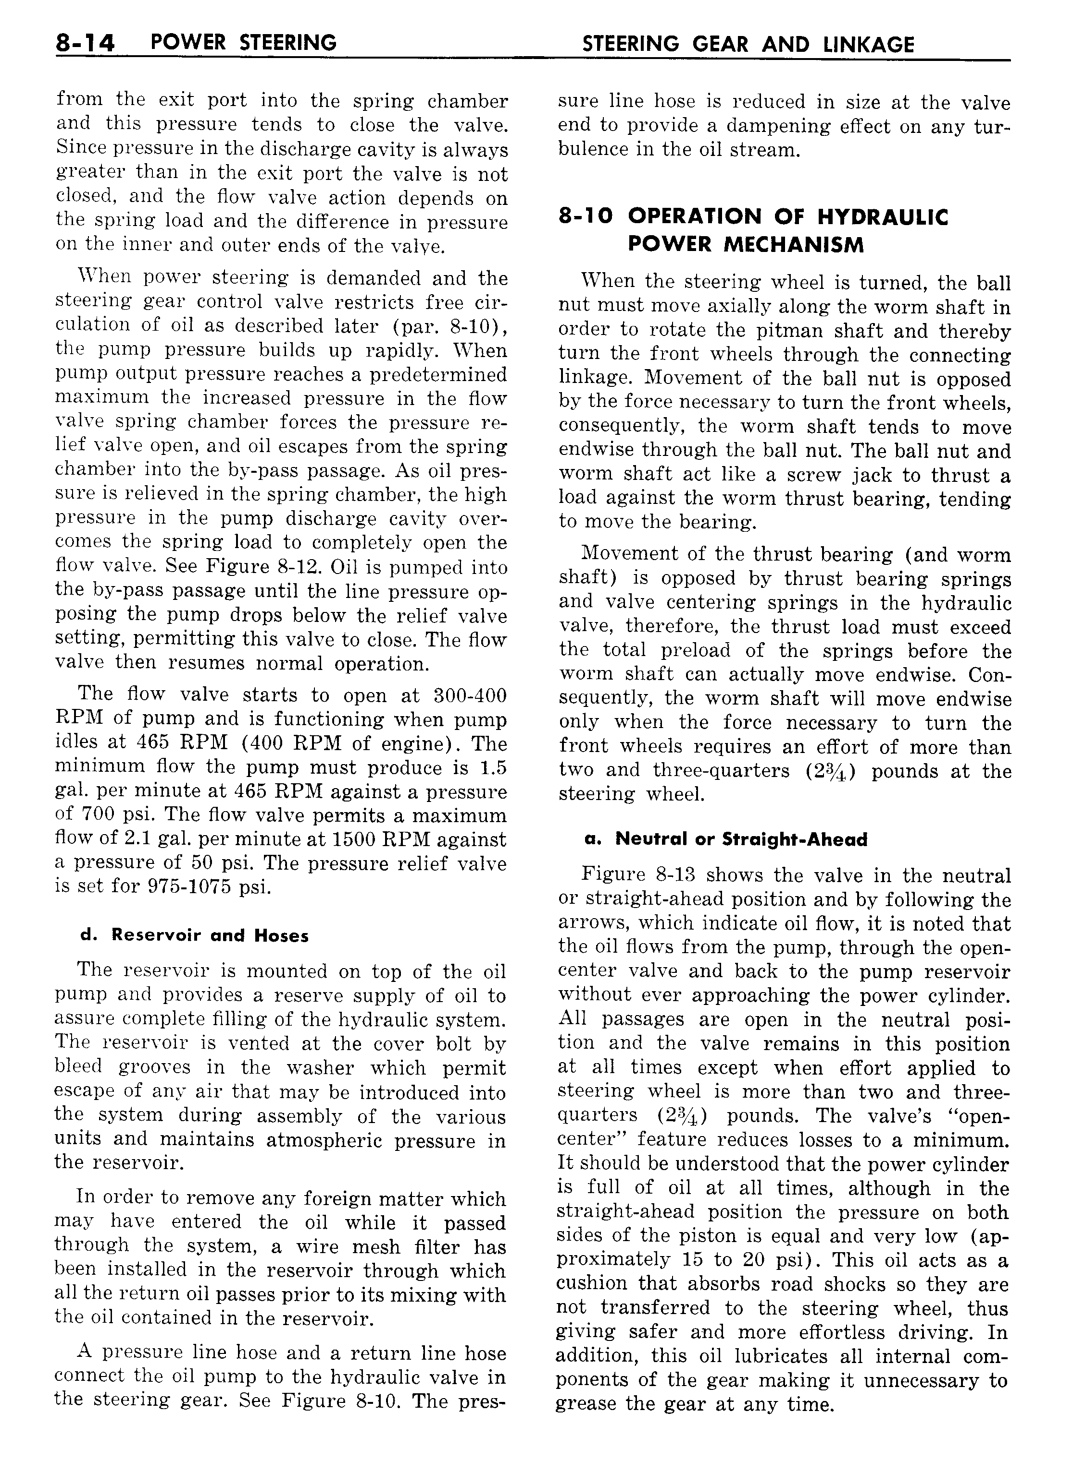 n_09 1957 Buick Shop Manual - Steering-014-014.jpg